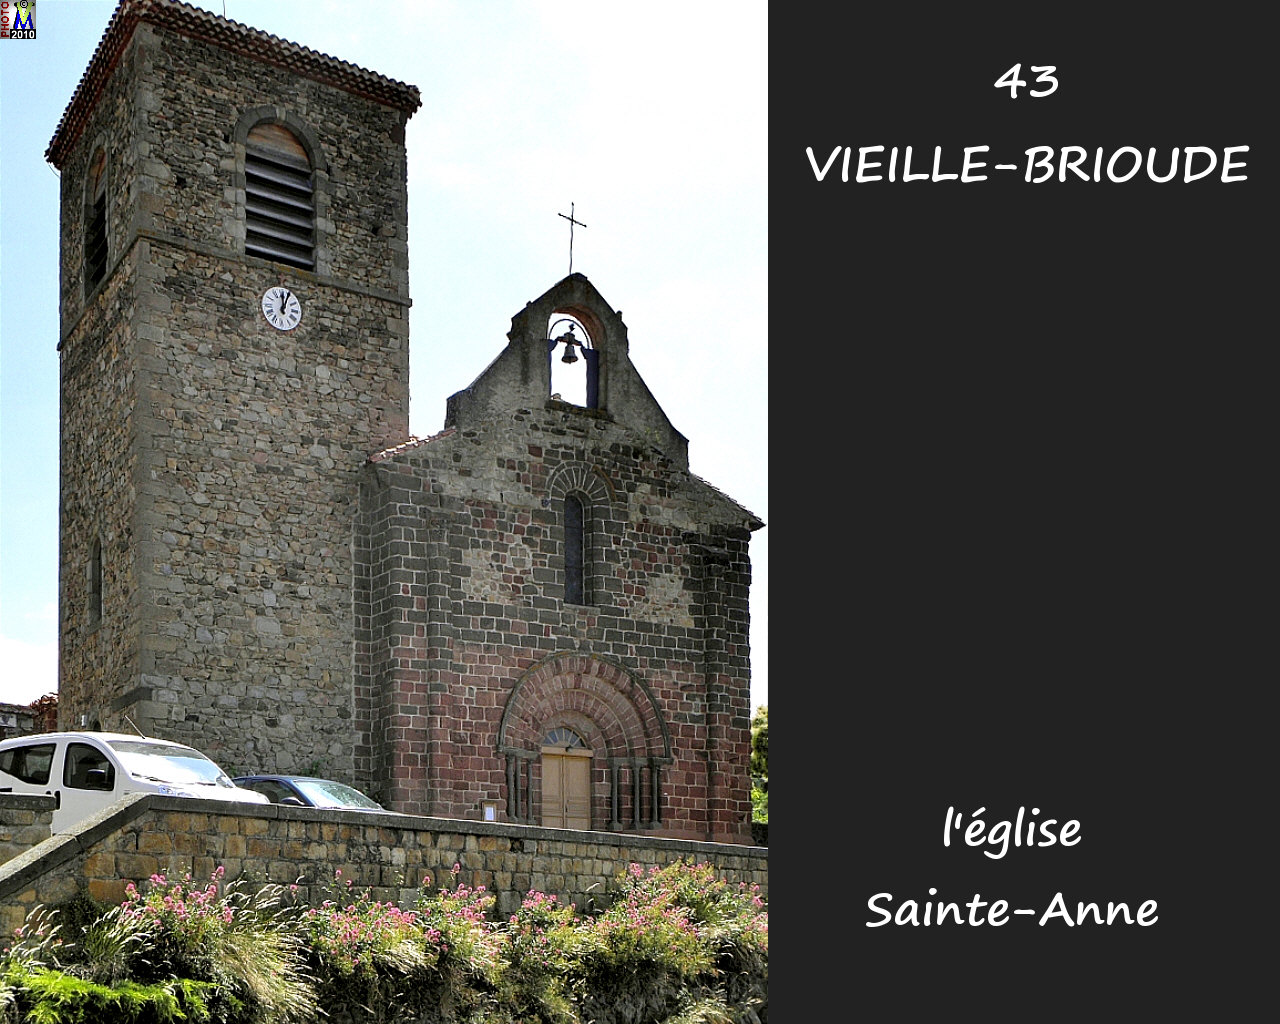 43VIEILLE-BRIOUDE_eglise_112.jpg